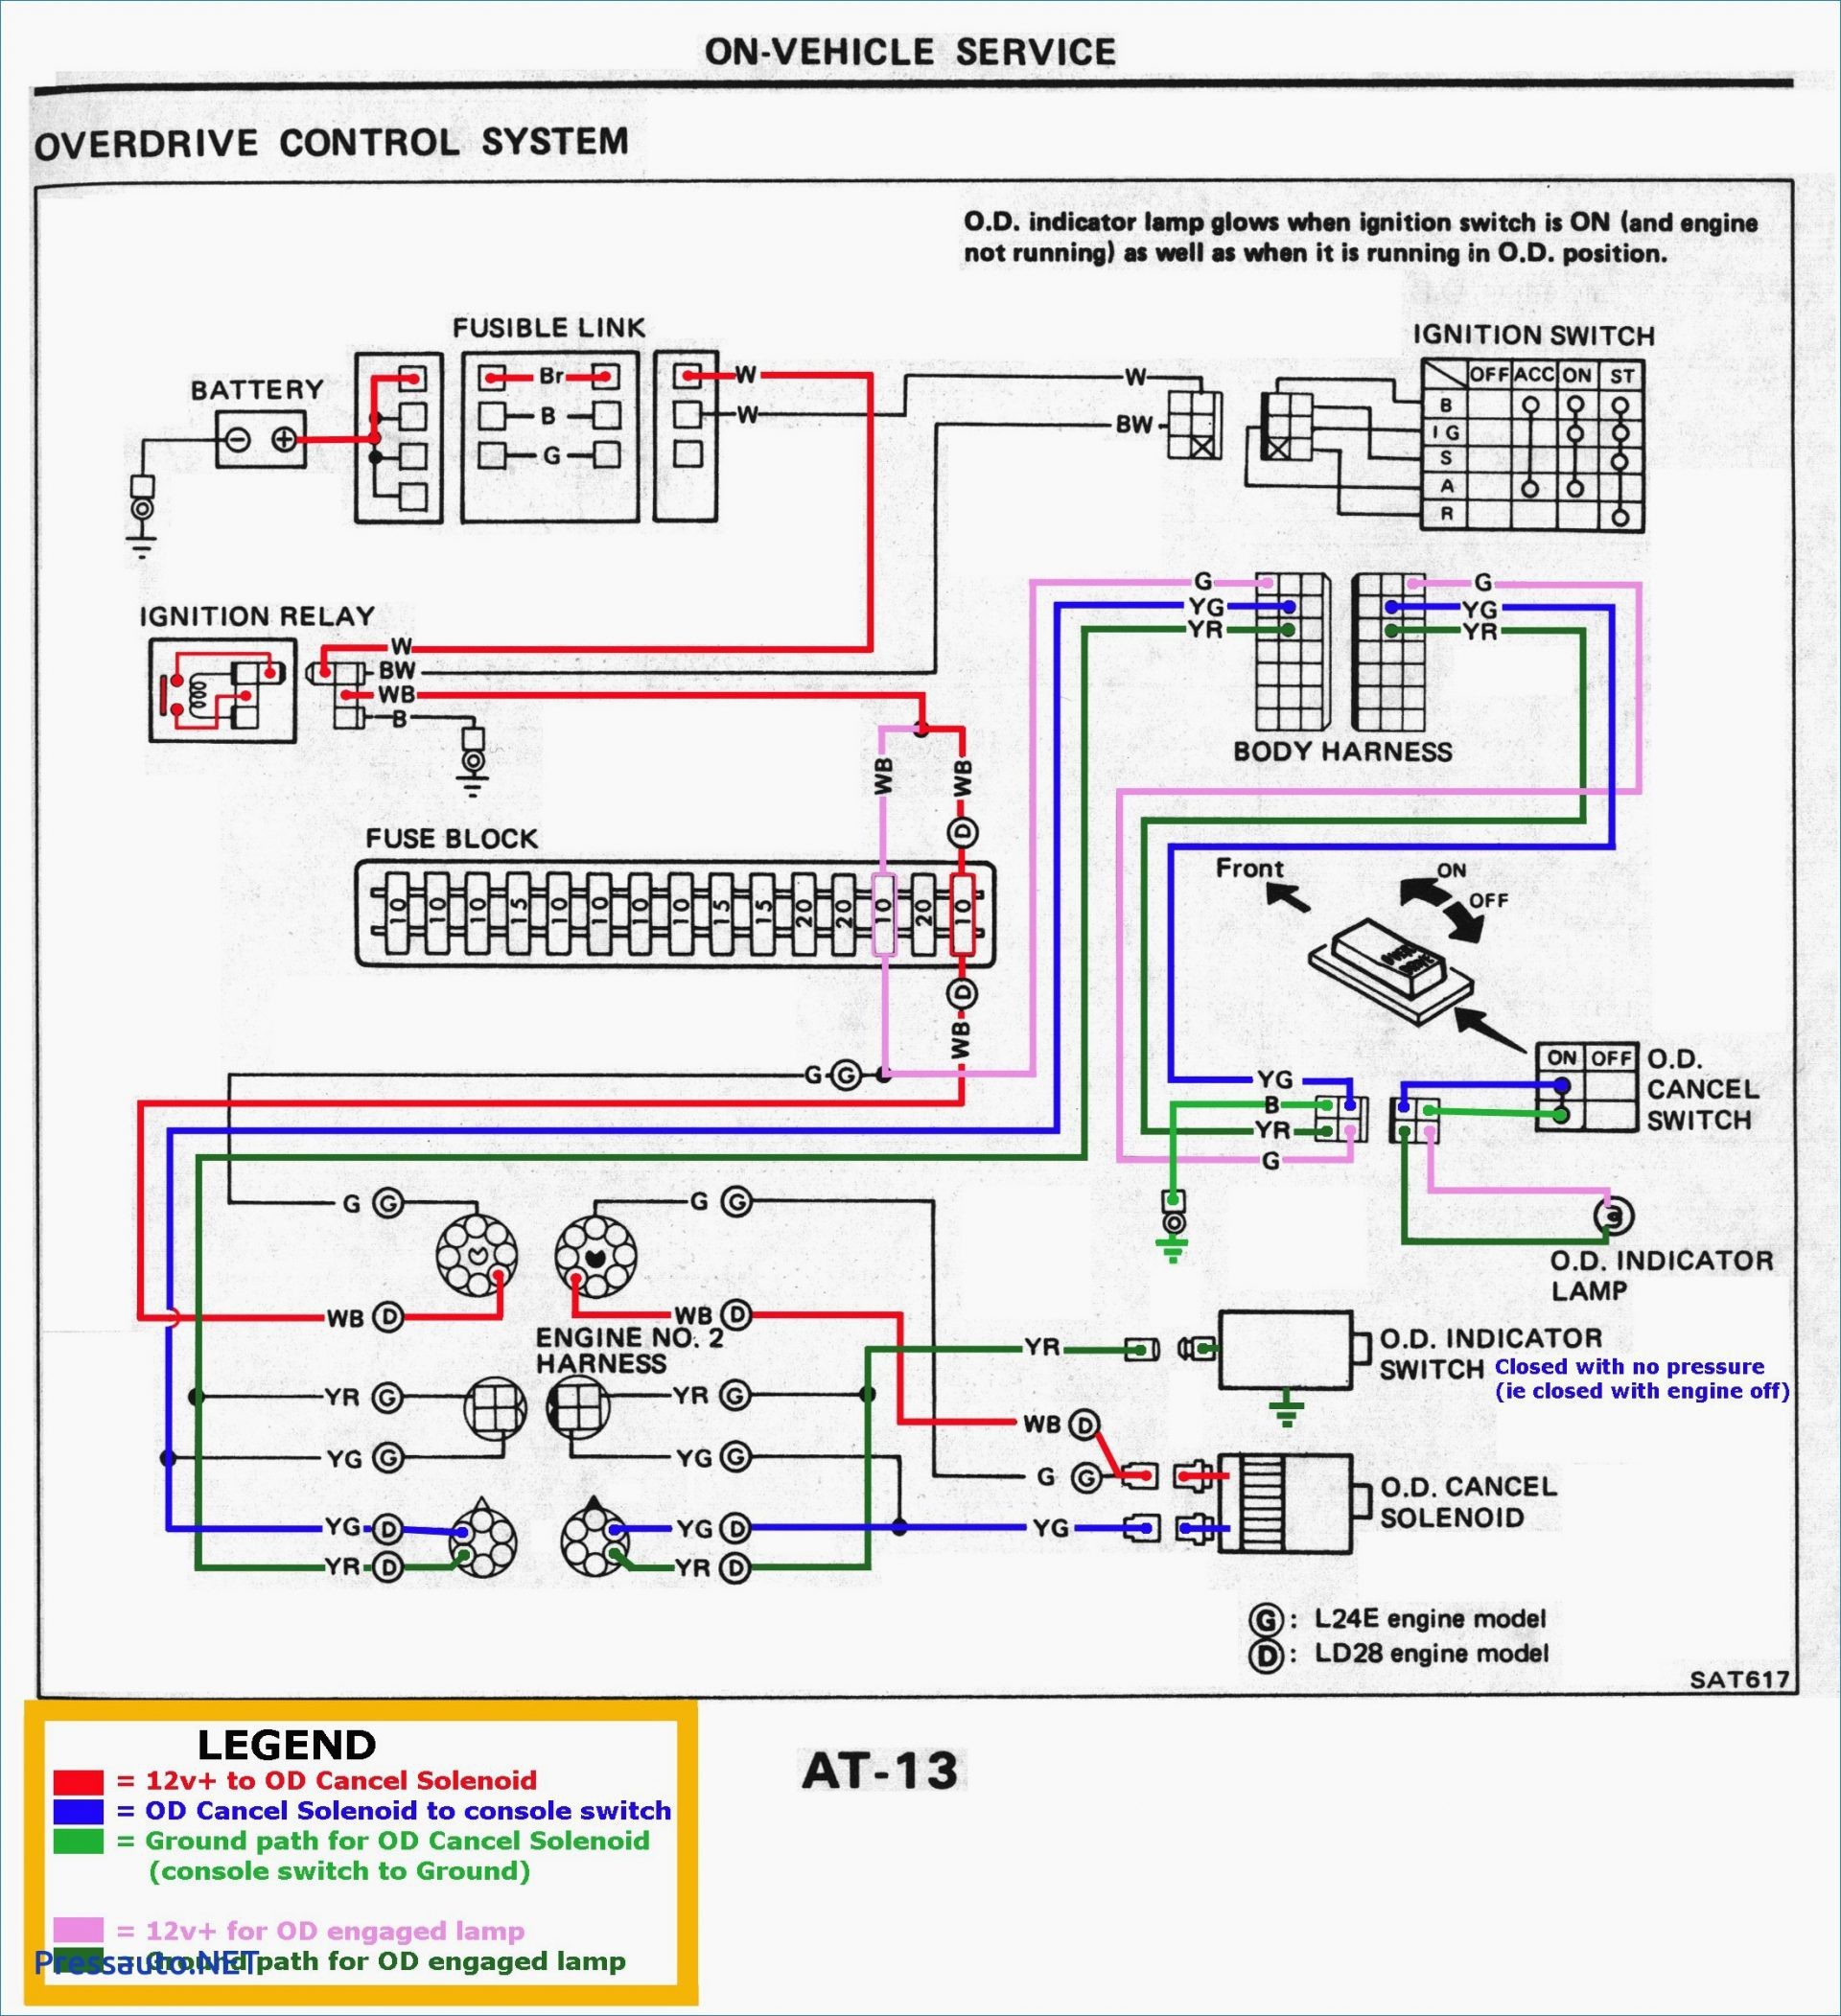 1983 toyota Pickup Wiring Diagram 86 toyota Pickup Tail Light Wiring Diagram Wiring solutions Of 1983 toyota Pickup Wiring Diagram